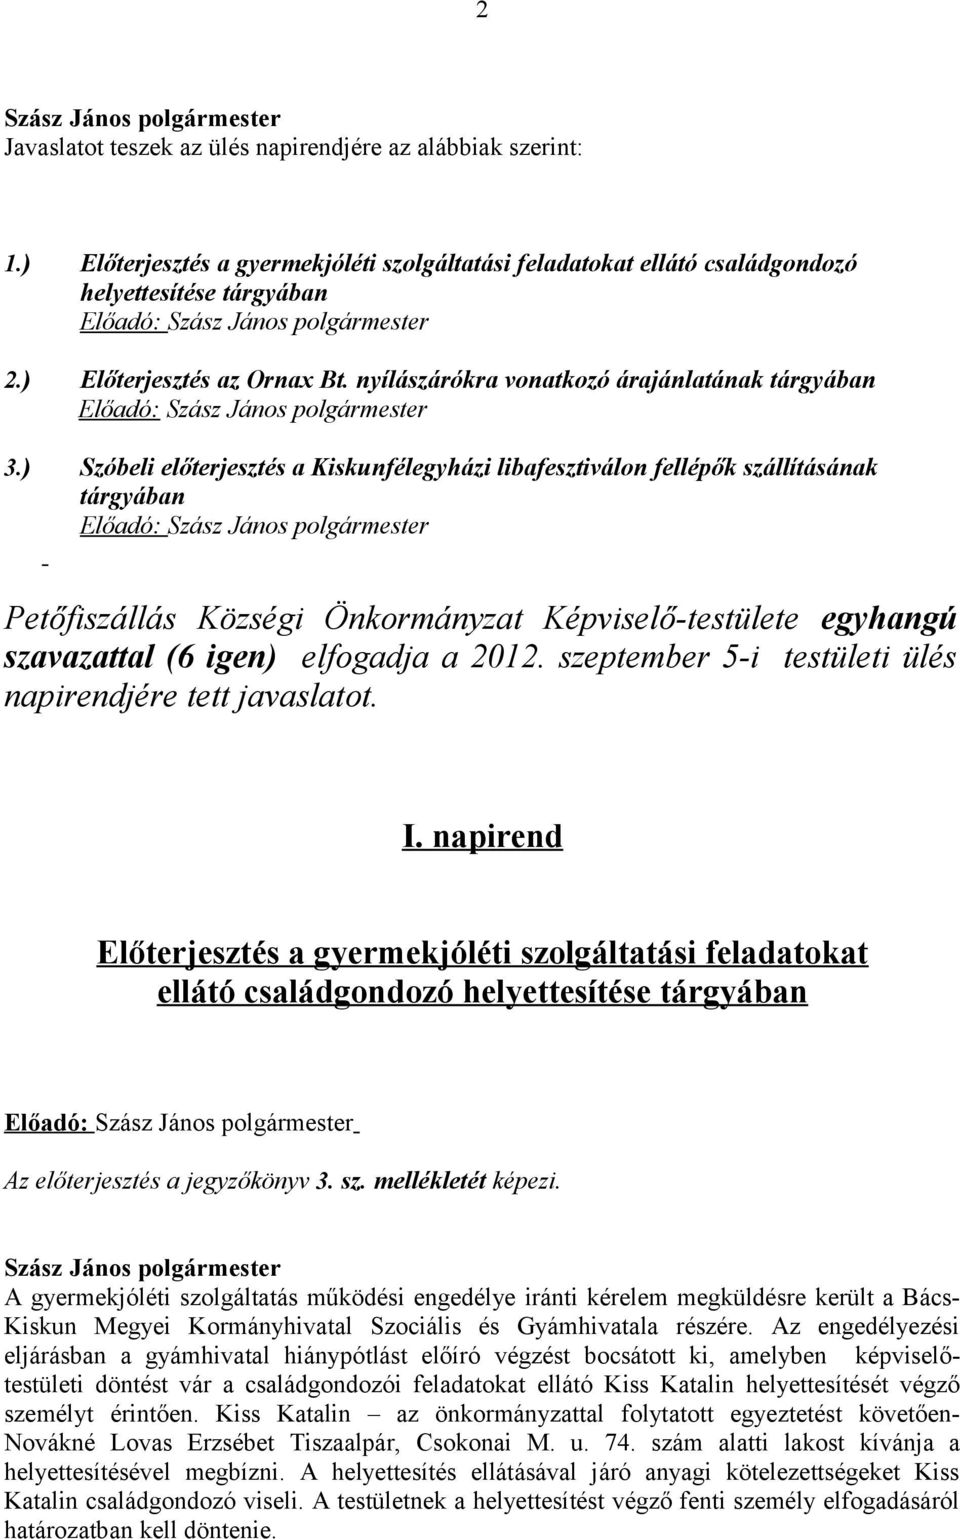 ) Szóbeli előterjesztés a Kiskunfélegyházi libafesztiválon fellépők szállításának tárgyában Előadó: Petőfiszállás Községi Önkormányzat Képviselő-testülete egyhangú szavazattal (6 igen) elfogadja a